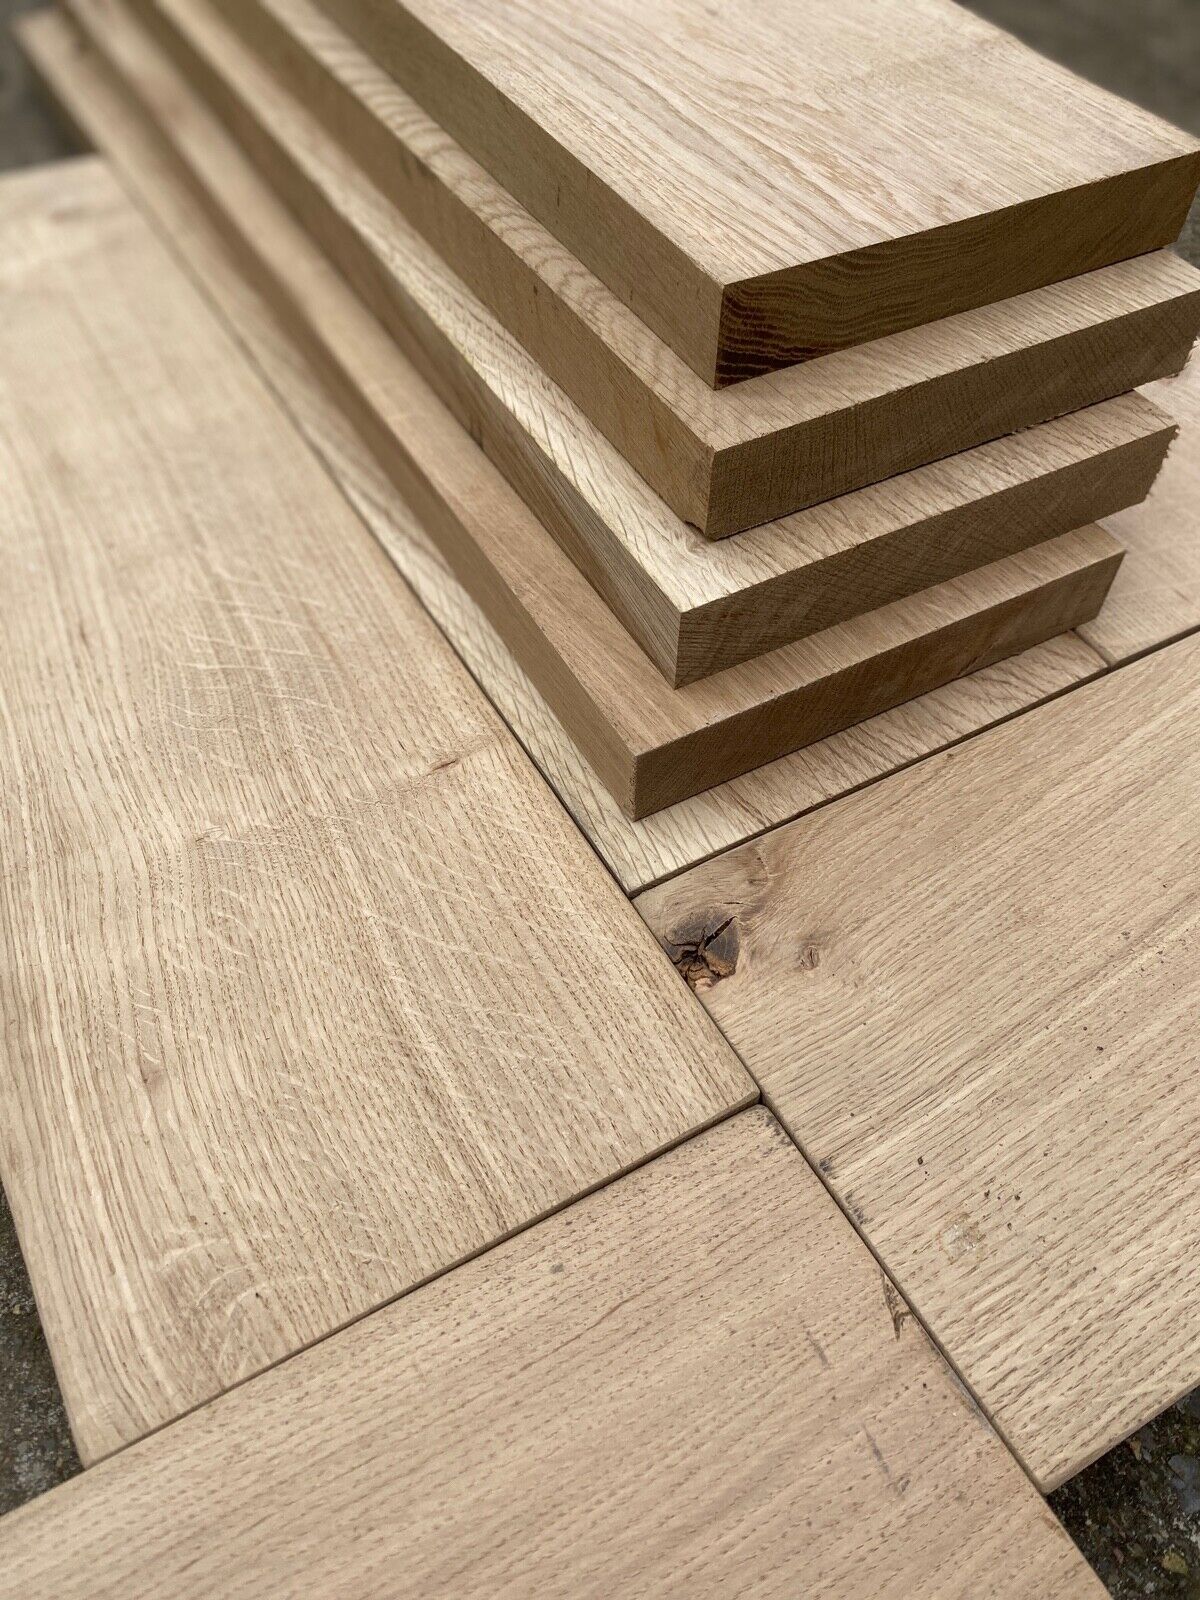 Character American Oak Timber / Oak Shelves / Oak Window Boards / Hardwood 22mm